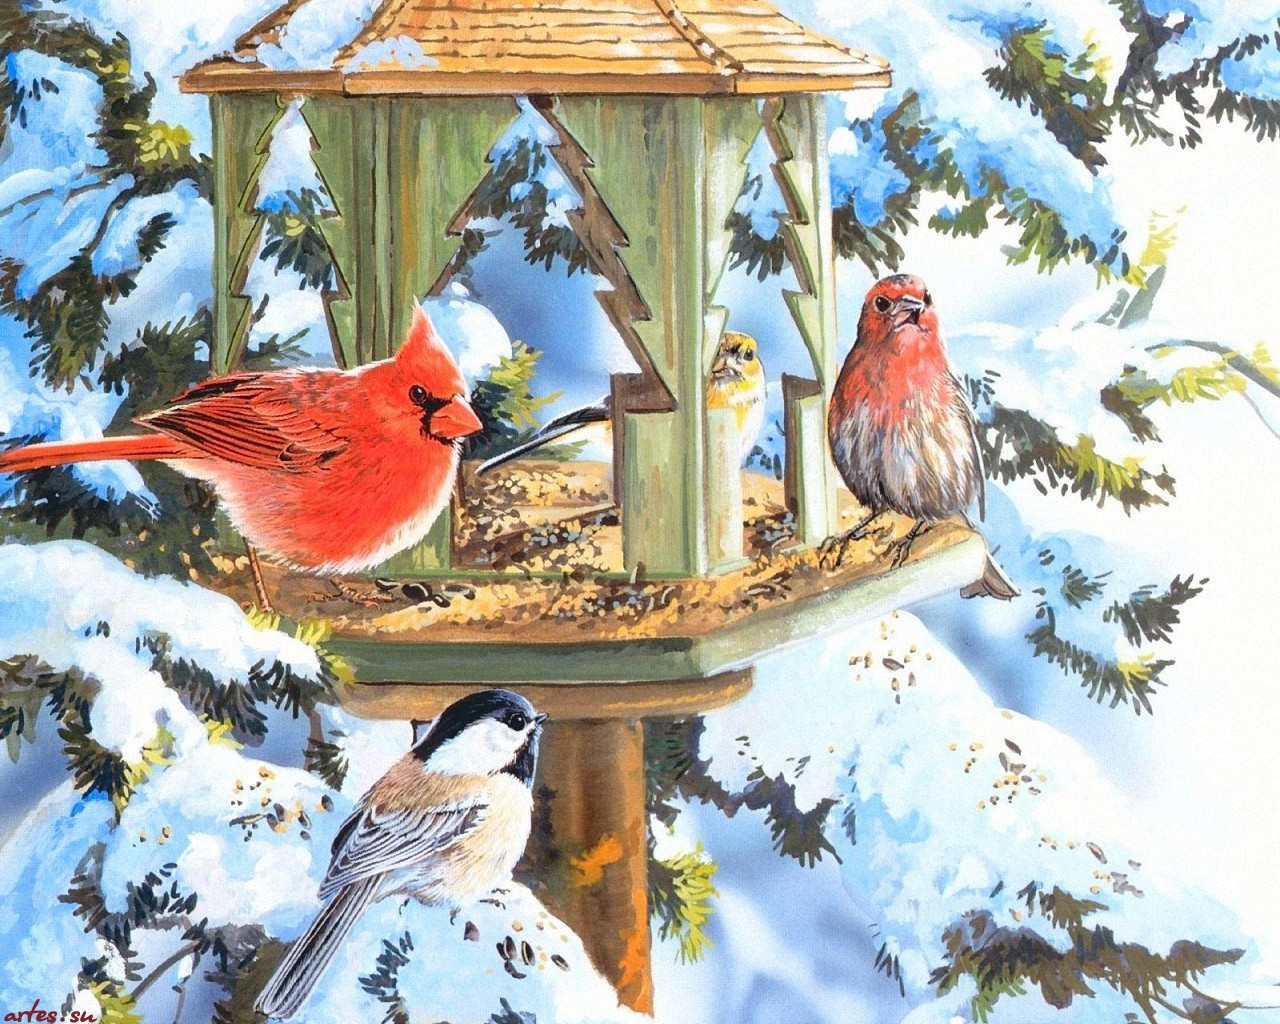 Зимующие птицы: стихи, раскраски, кроссворд